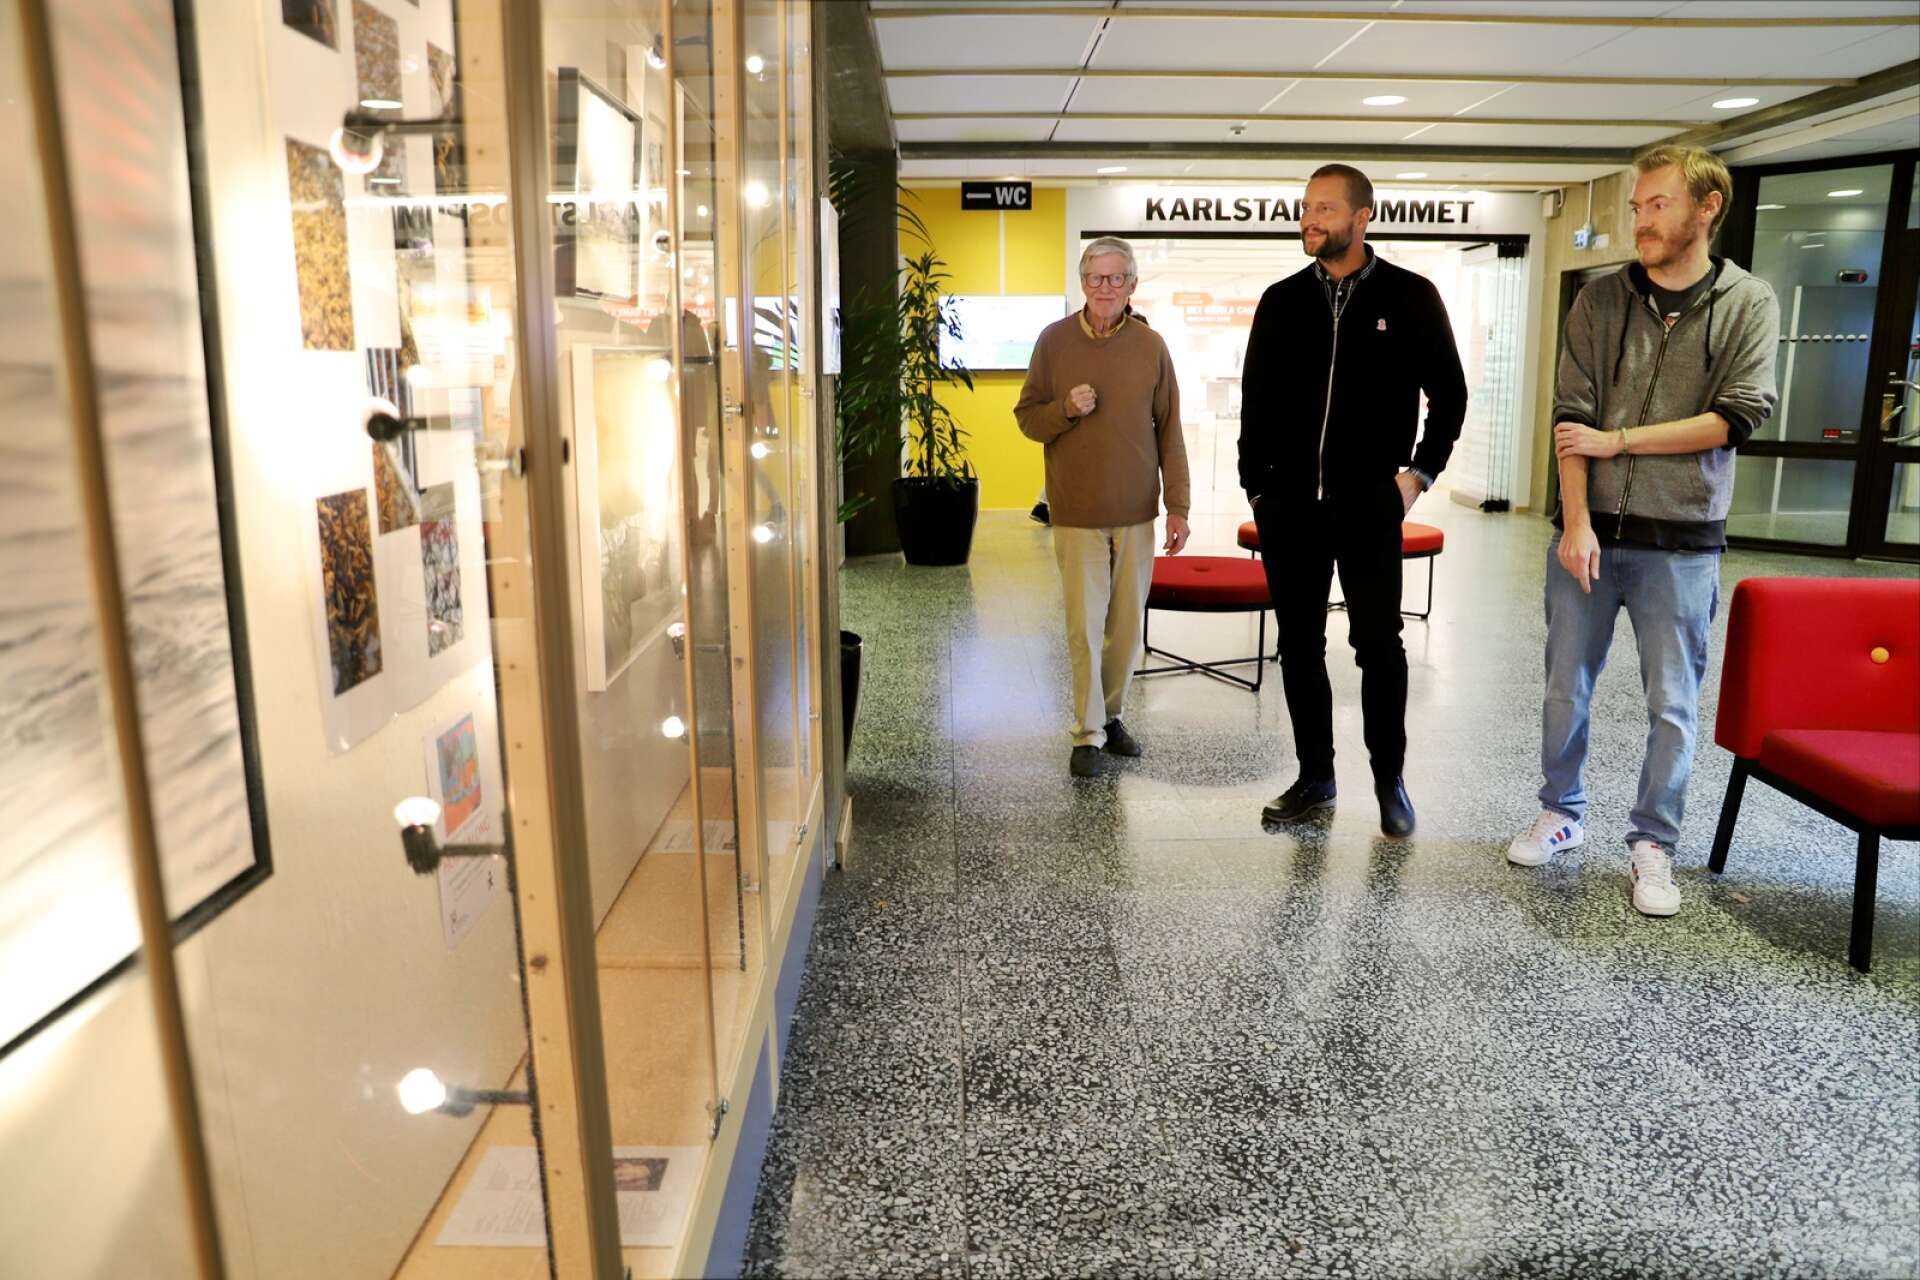 De nya medlemmarna i Värmlands konstnärsförbund ställer ut på stadsbiblioteket i Karlstad. Två av dem är Mathias Frykholm och Björn Nordström, som ser utställningen tillsammans med Stefan Norén.